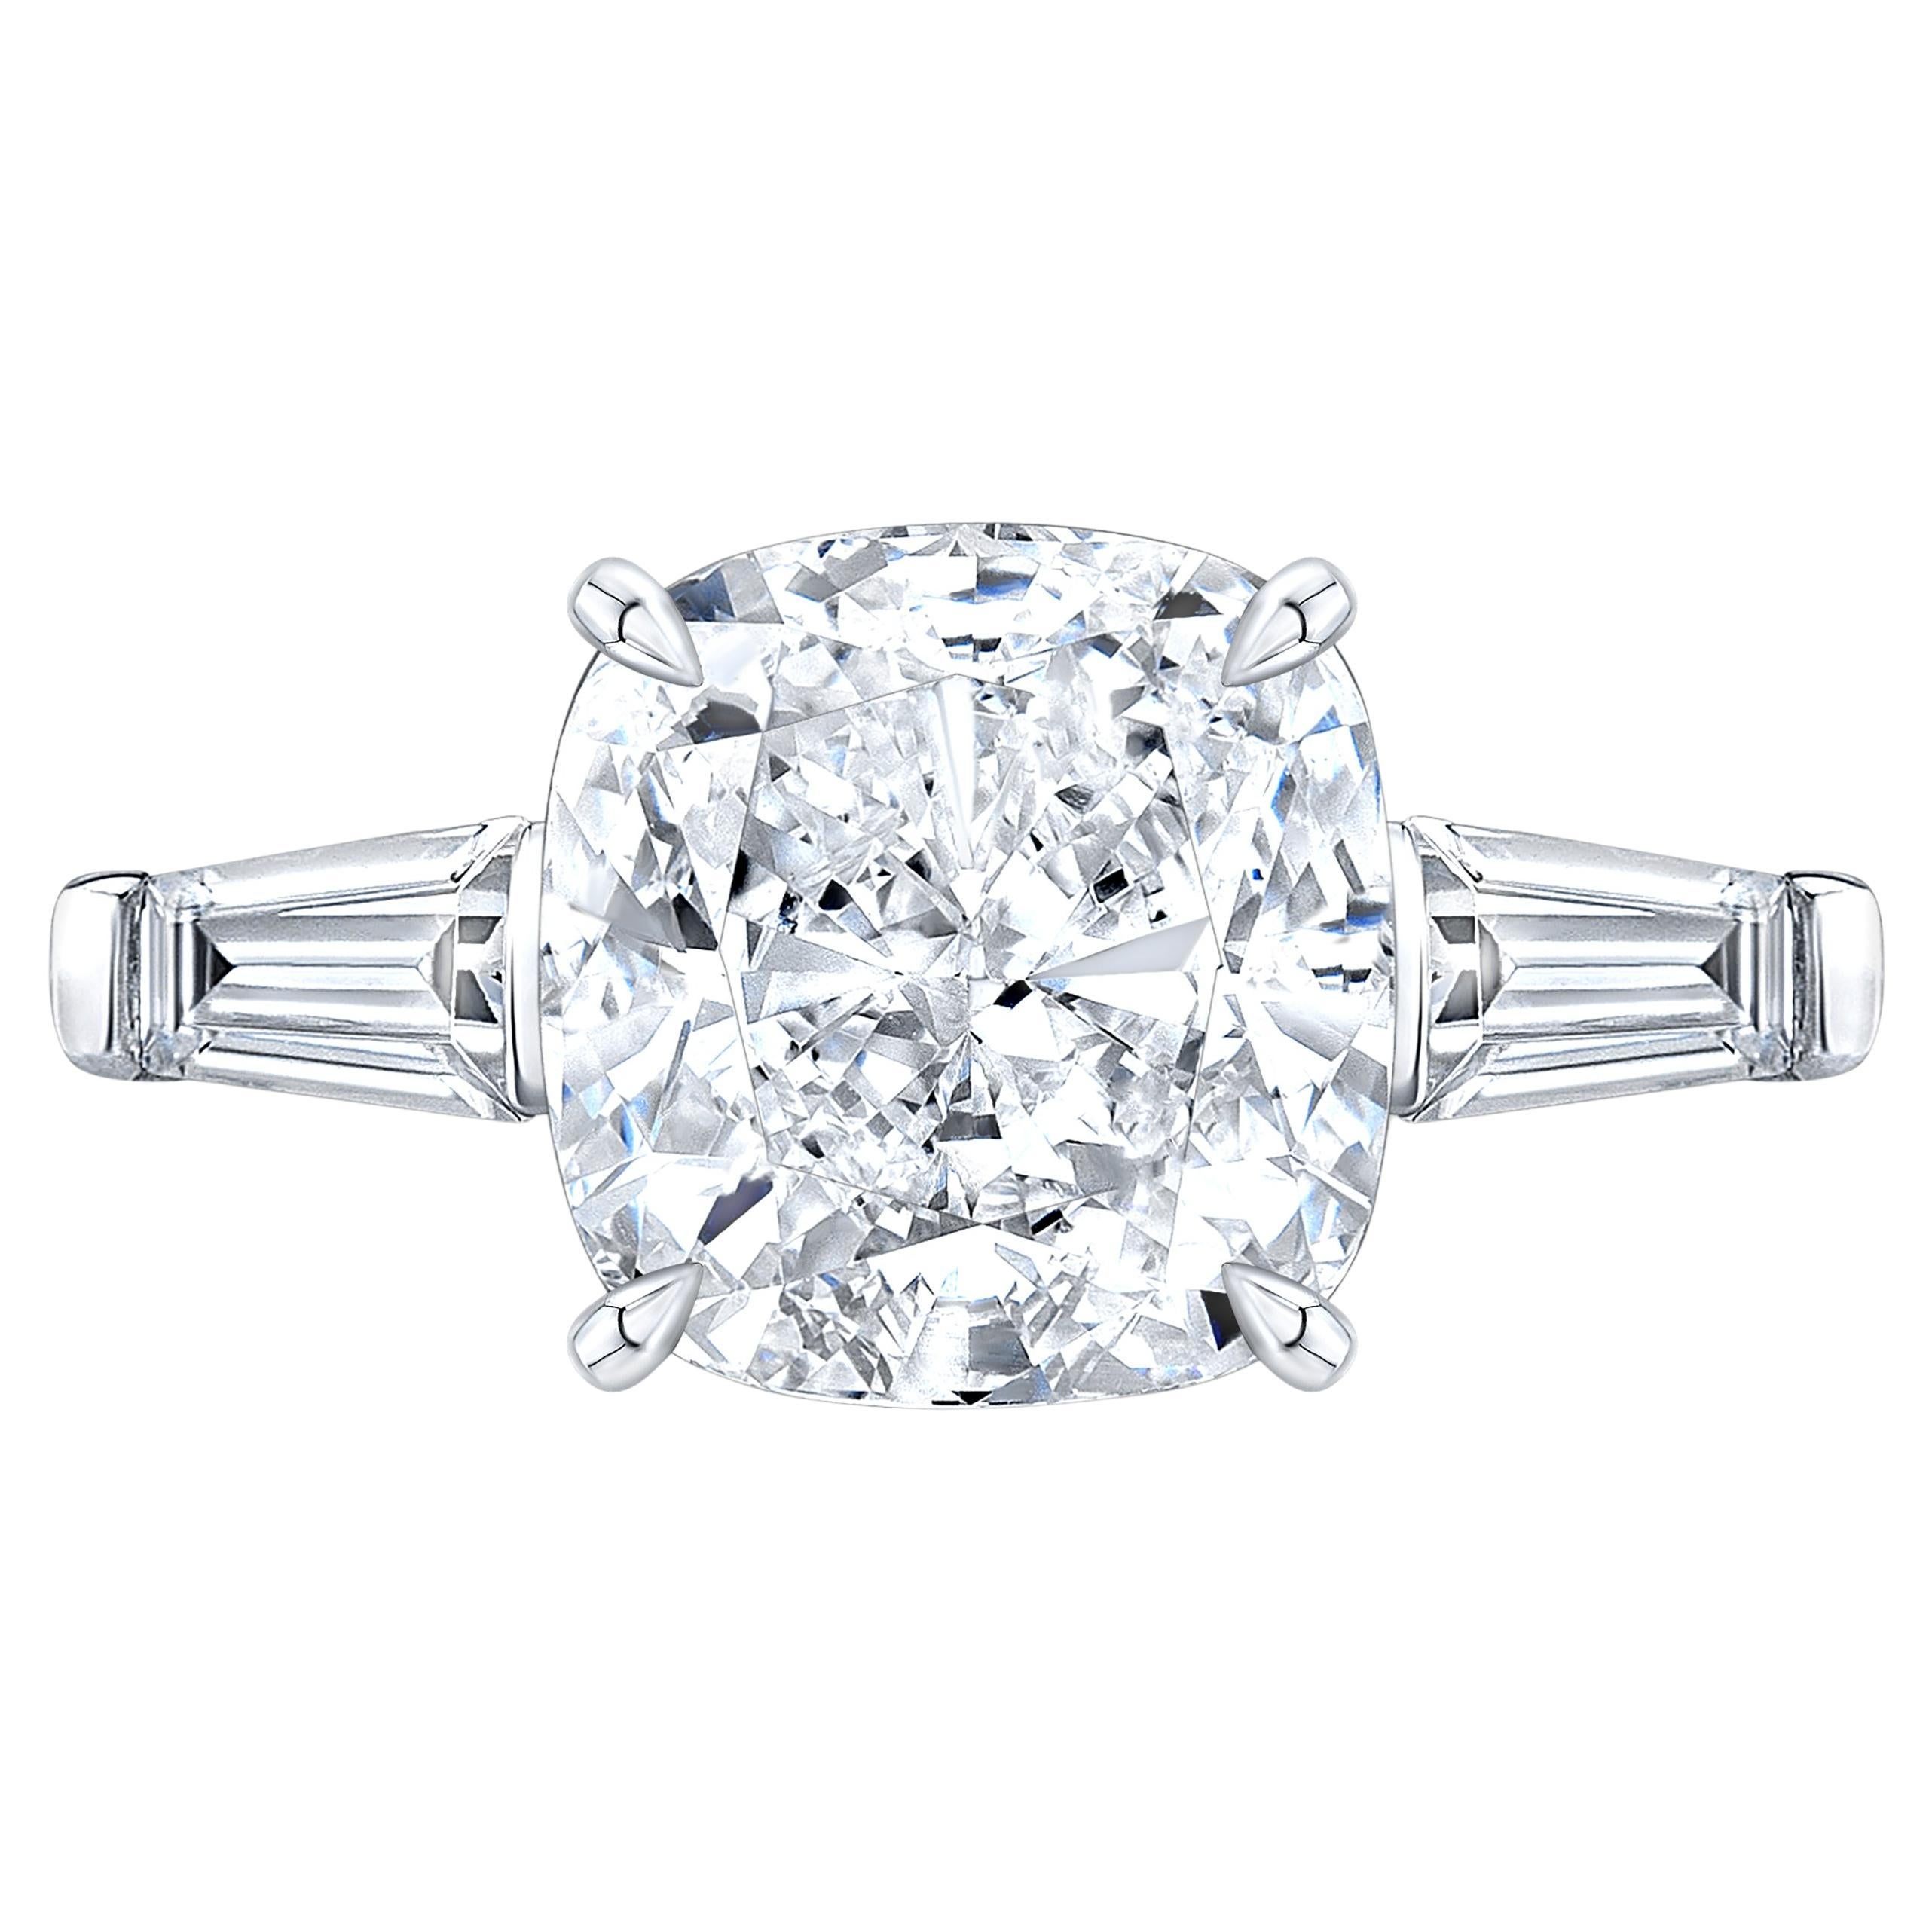 Ein exquisiter Ring, bestehend aus einem 5-karätigen Diamanten im Kissenschliff und zwei seitlichen, spitz zulaufenden Baguettediamanten. 
Die Fassung ist aus massivem 18 Karat Weißgold gefertigt.
Farbe D
Klarheit VS1
   